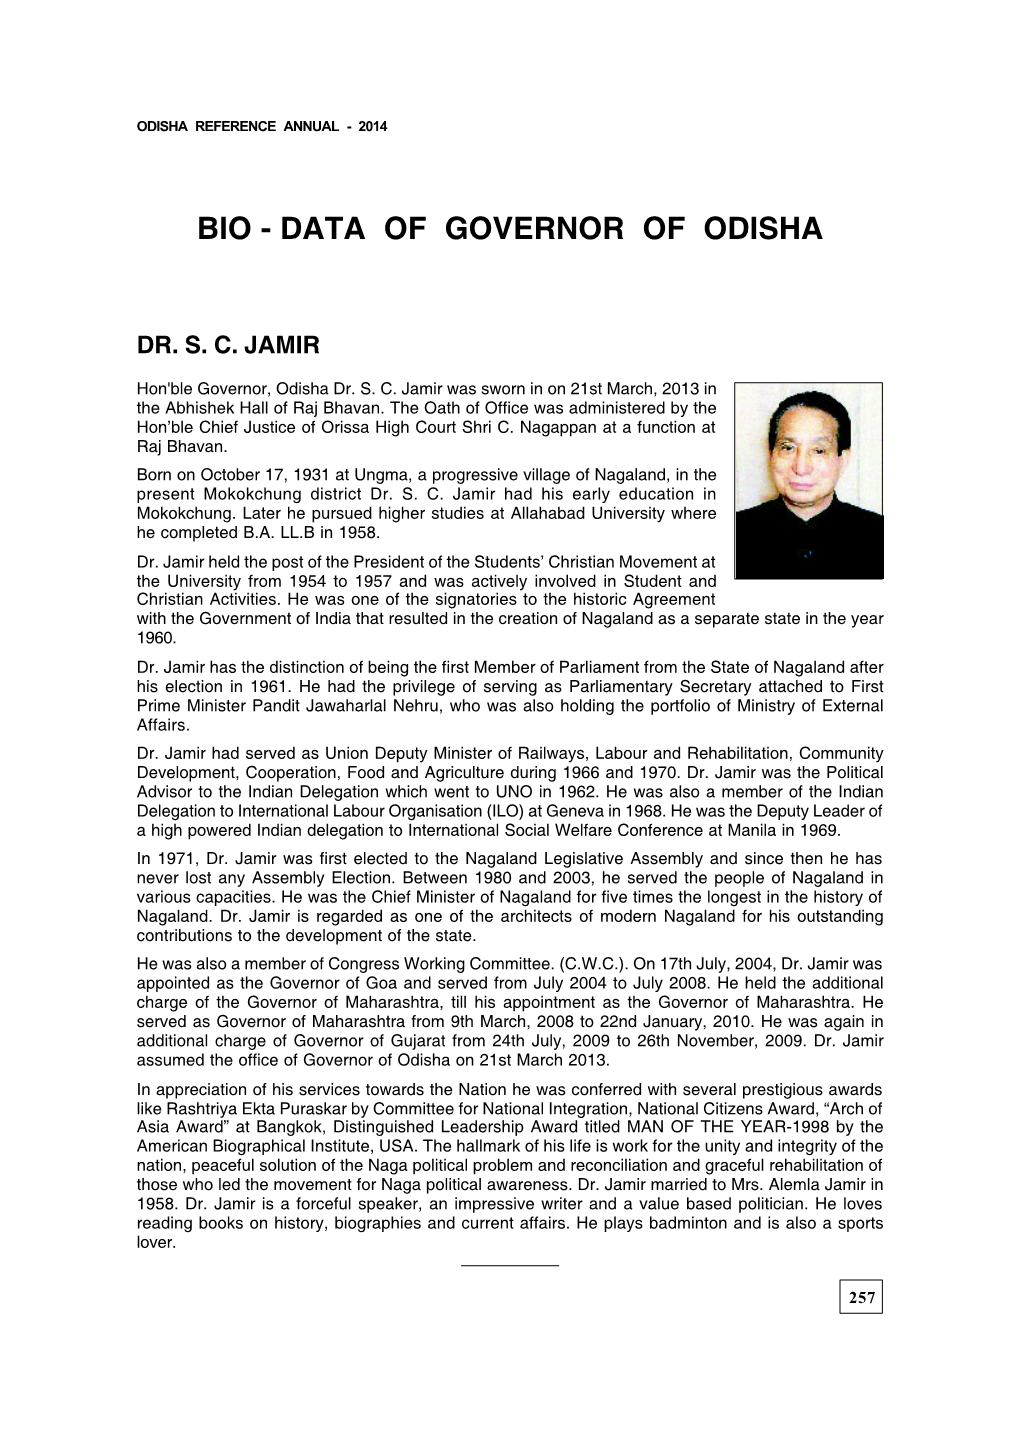 Bio - Data of Governor of Odisha